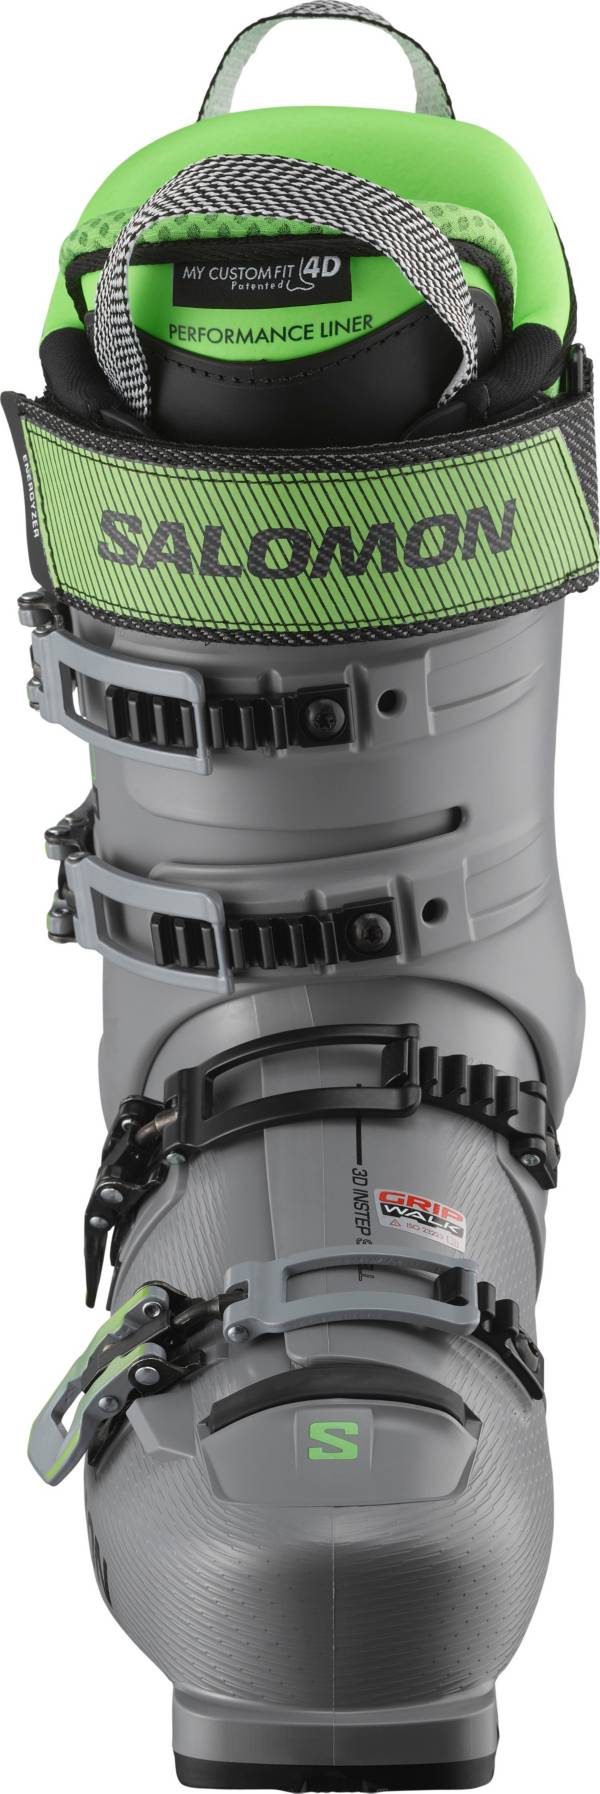 Salomon Shift Pro 120 AT Men's Ski Boots product image